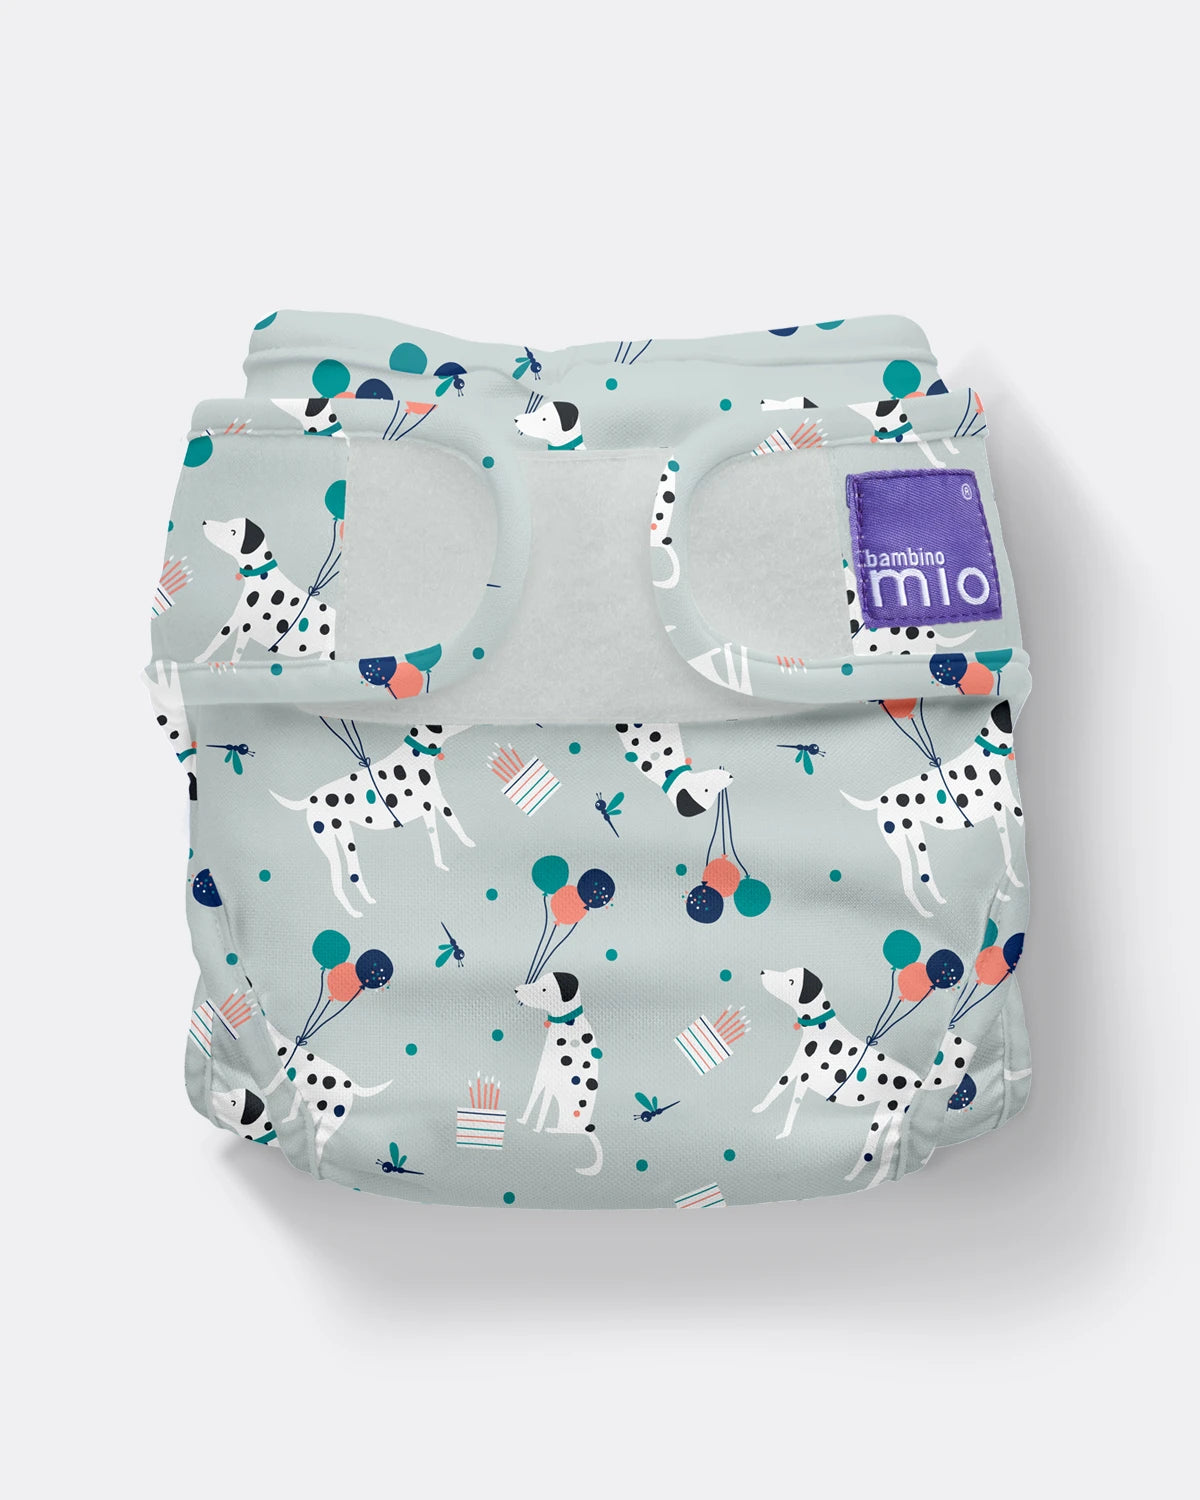 mioduo reusable nappy cover - Bambino Mio (UK & IE)